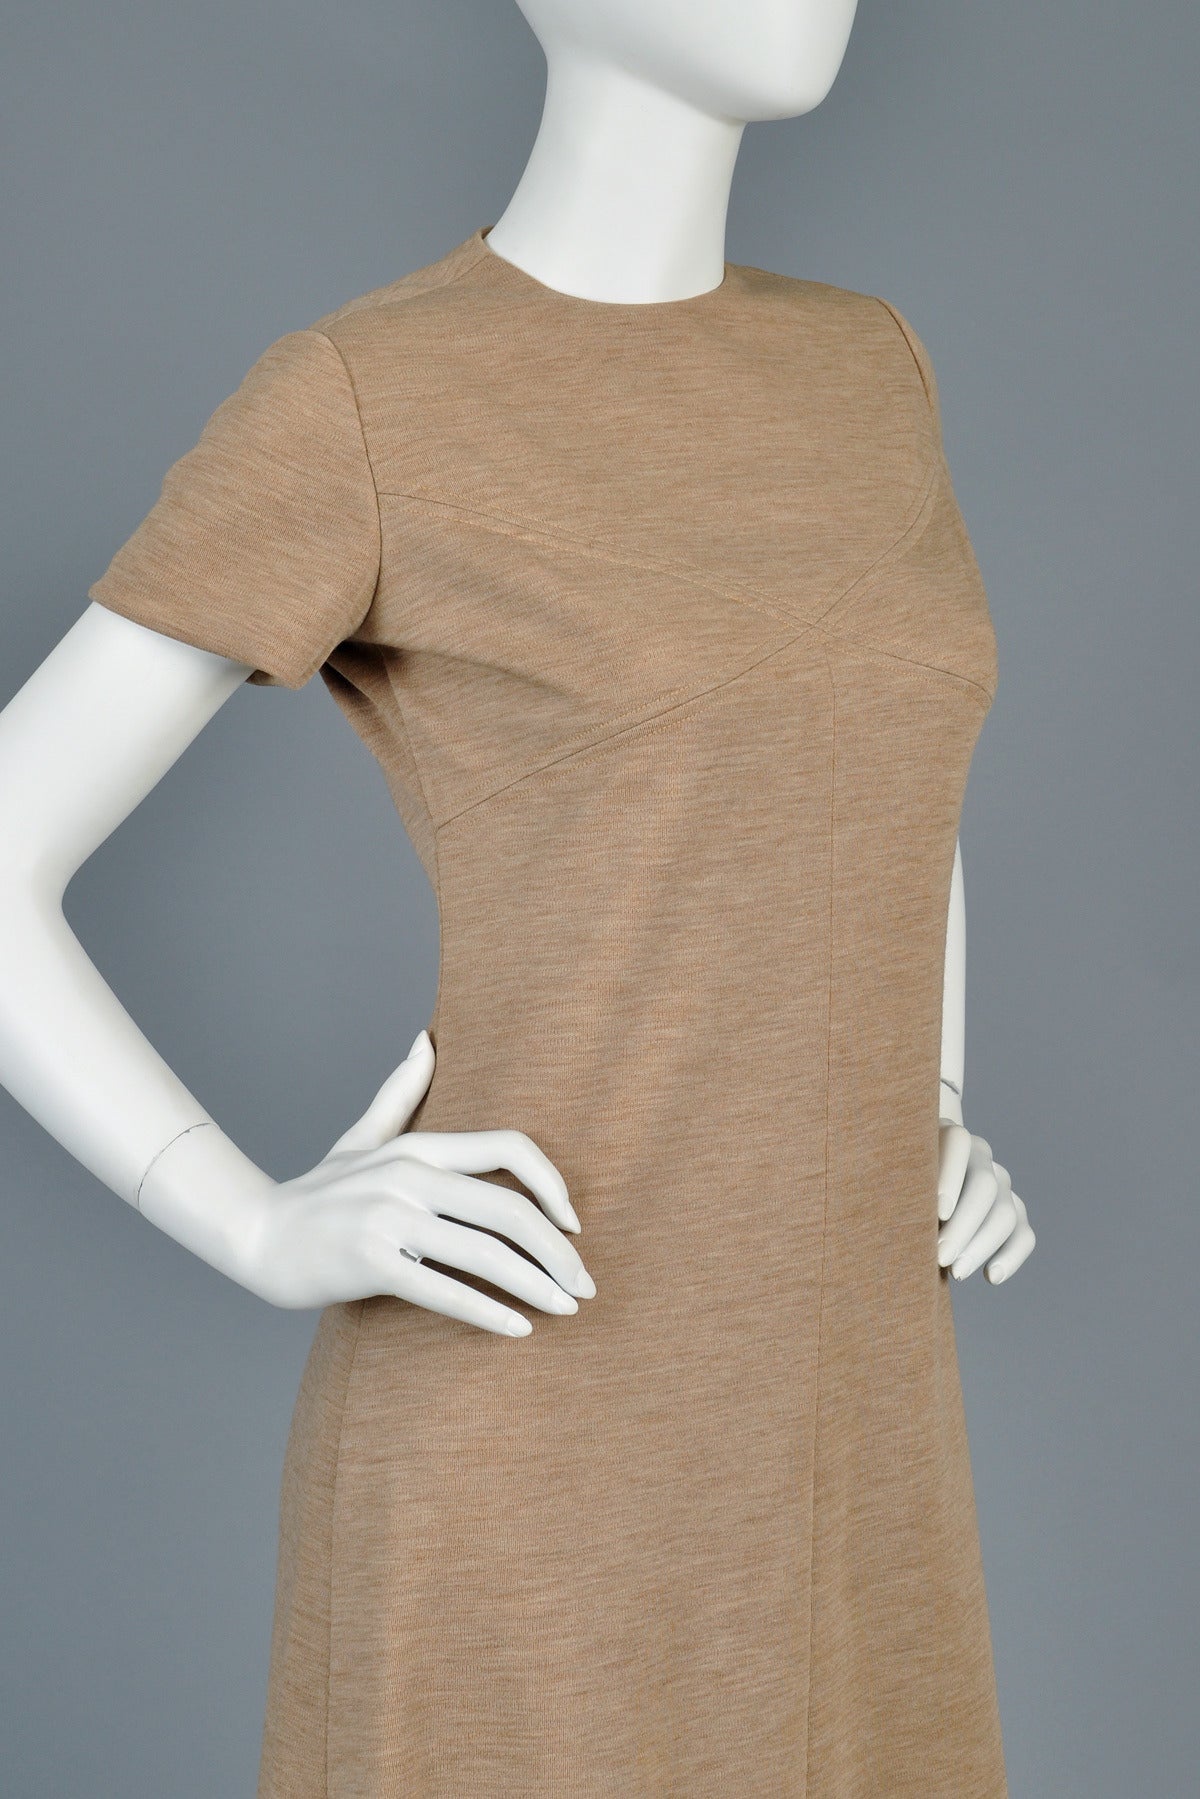 Bill Blass 1960s A-Line Mocha Wool Mini Dress For Sale 2